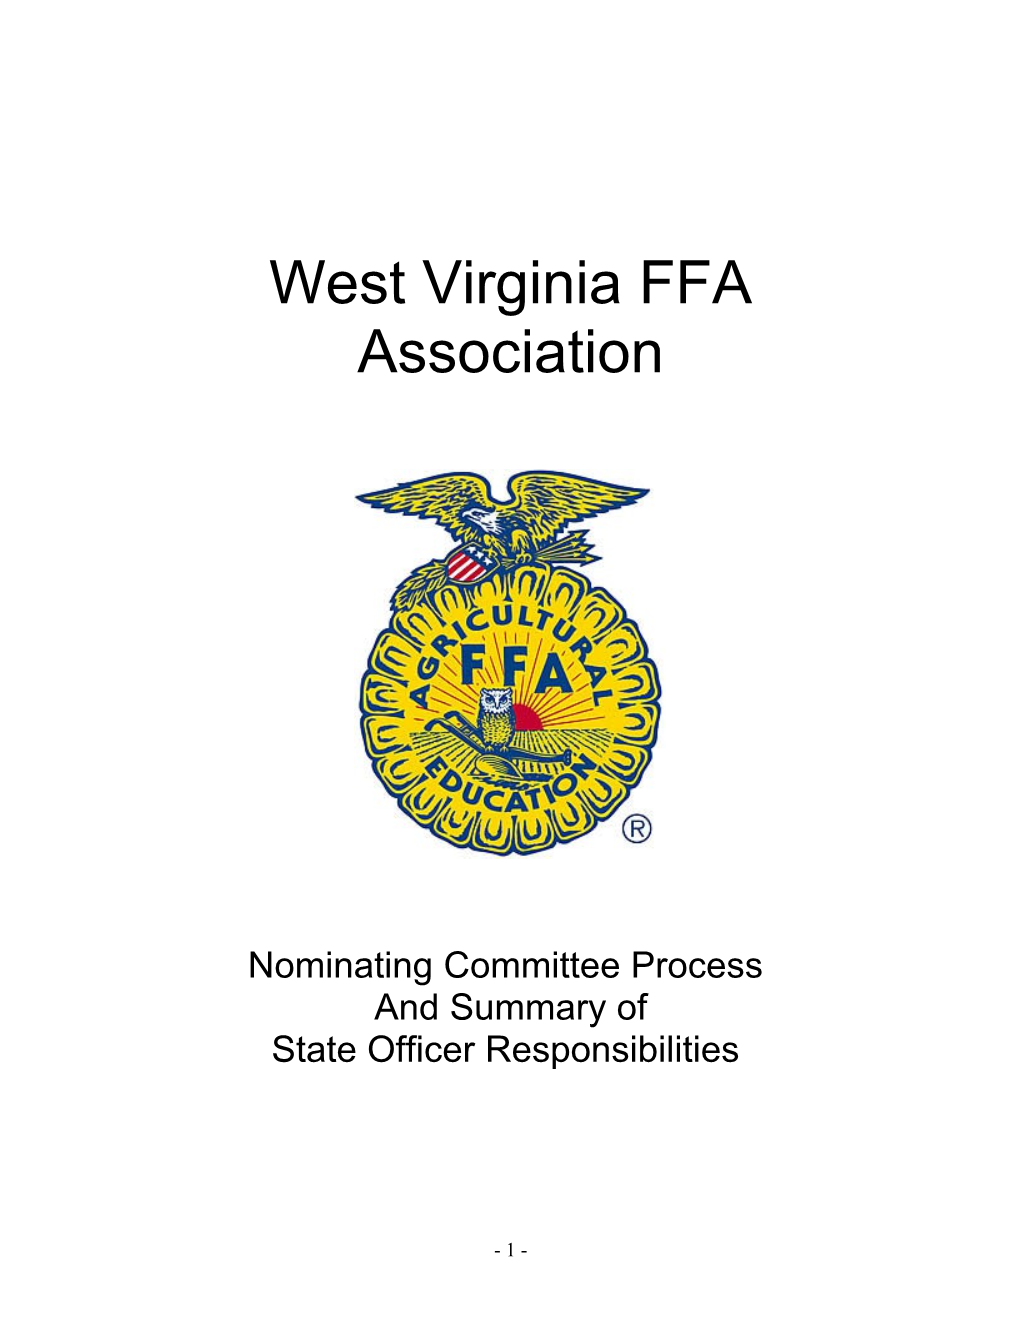 West Virginia FFA Association